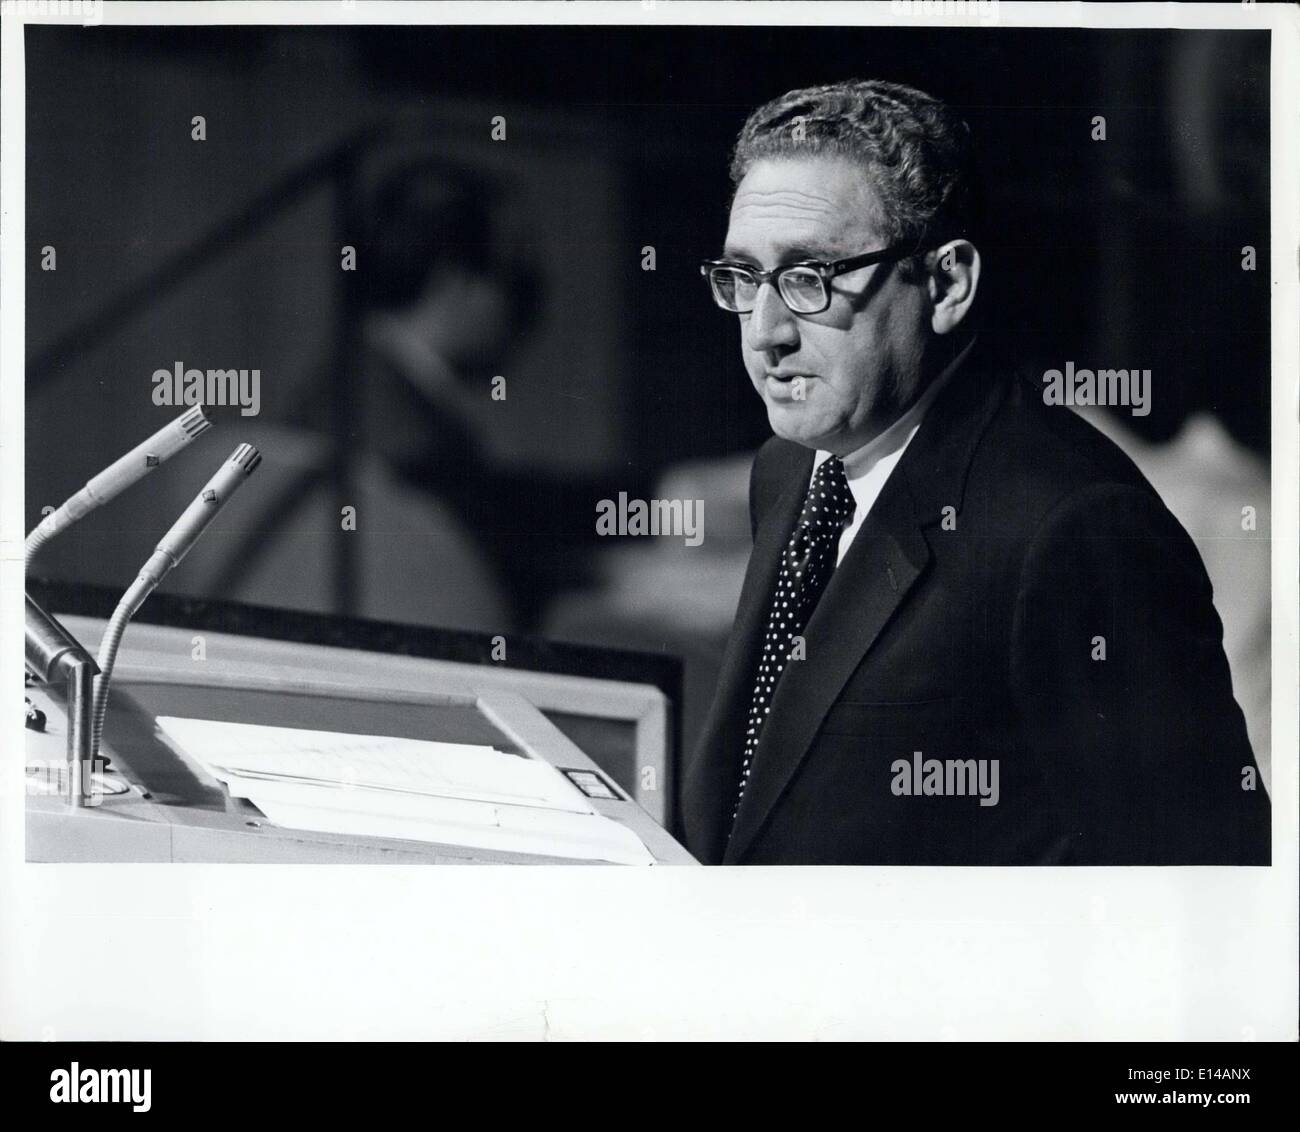 Apr. 17, 2012 - STATI UNITI Segretario di Stato agli indirizzi Assemblea Generale.: 122,958 onu nazioni unite, New York, 24 settembre 1973 vista parziale dell'Assemblea generale Hall durante il discorso qui oggi da Henry Kissinger A., Segretario di Stato degli Stati Uniti. Foto Stock